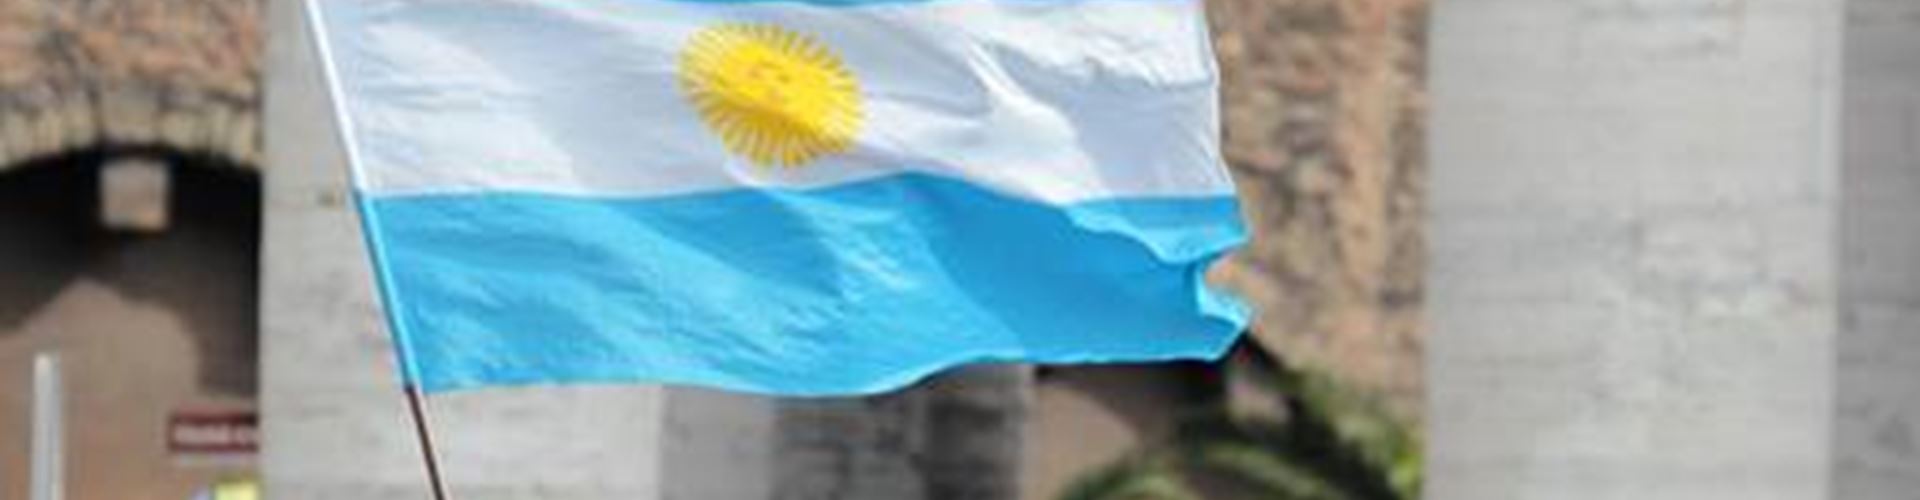 Argentina sets plans to repay $10 billion Paris Club debt